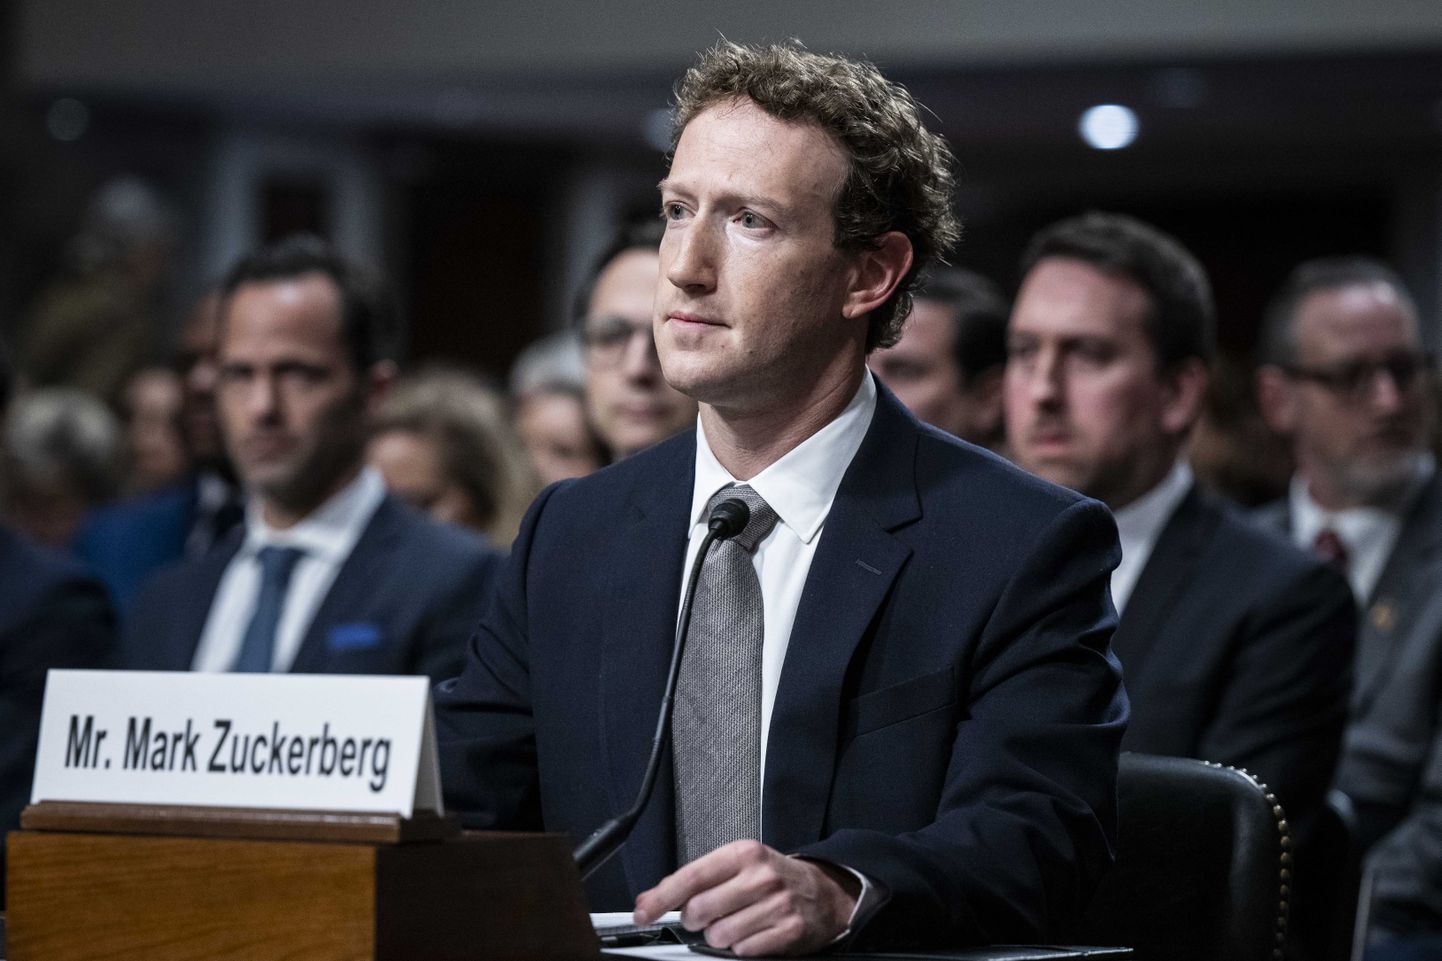 Mark Zuckerbergi vara on tänavu paisunud nagu pärmi peal.